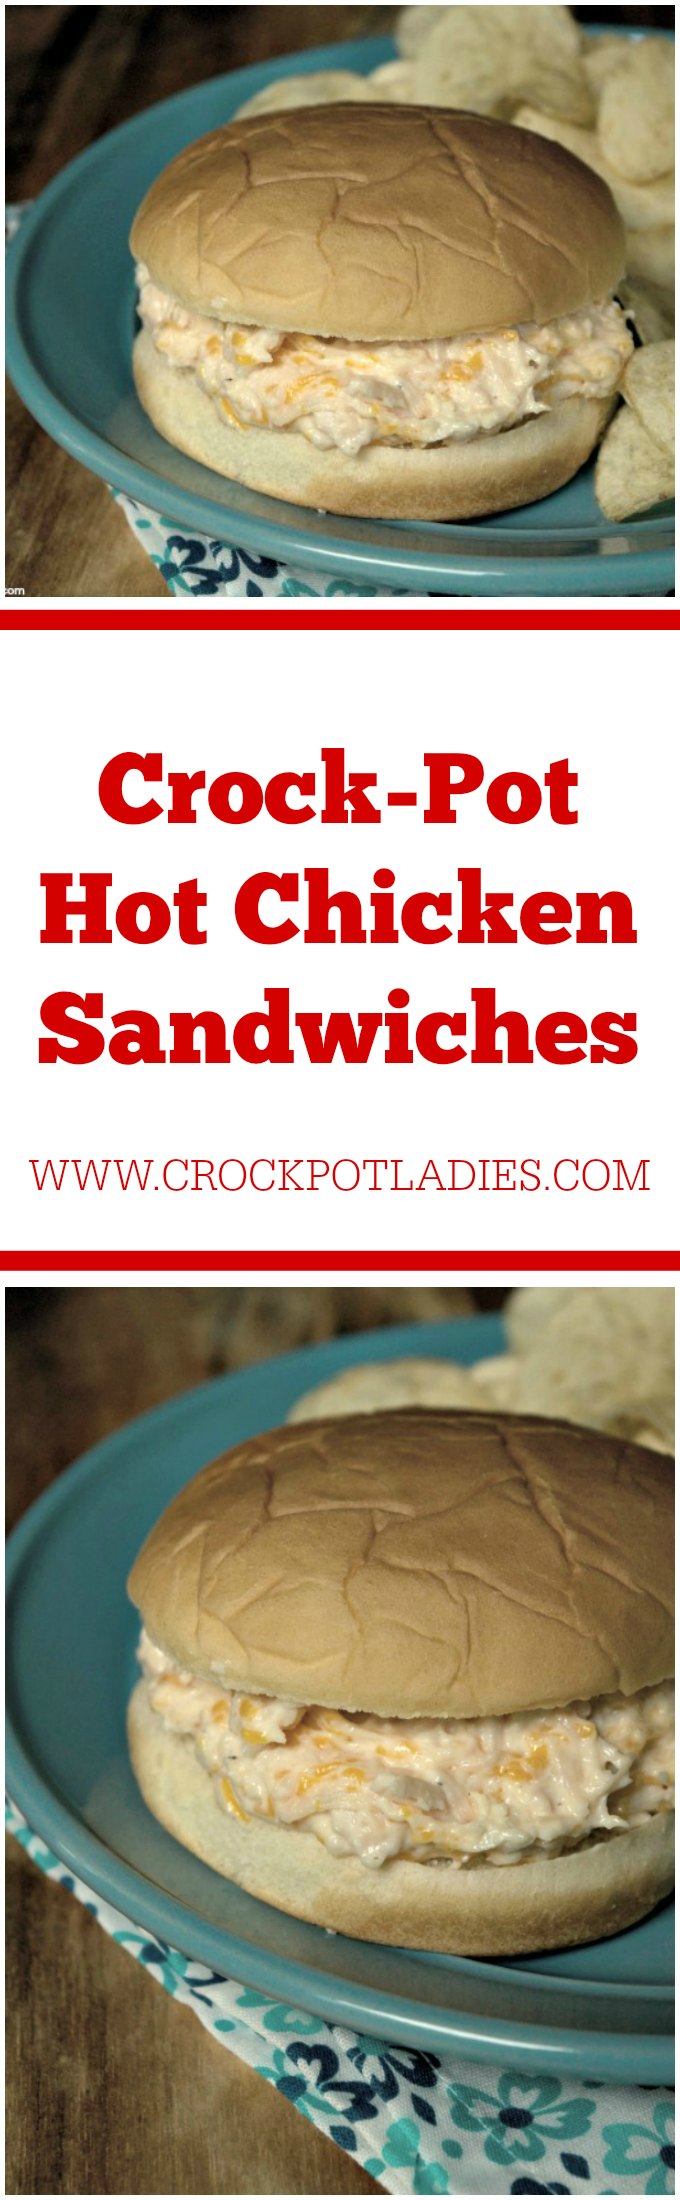 Crock-Pot Hot Chicken Sandwiches